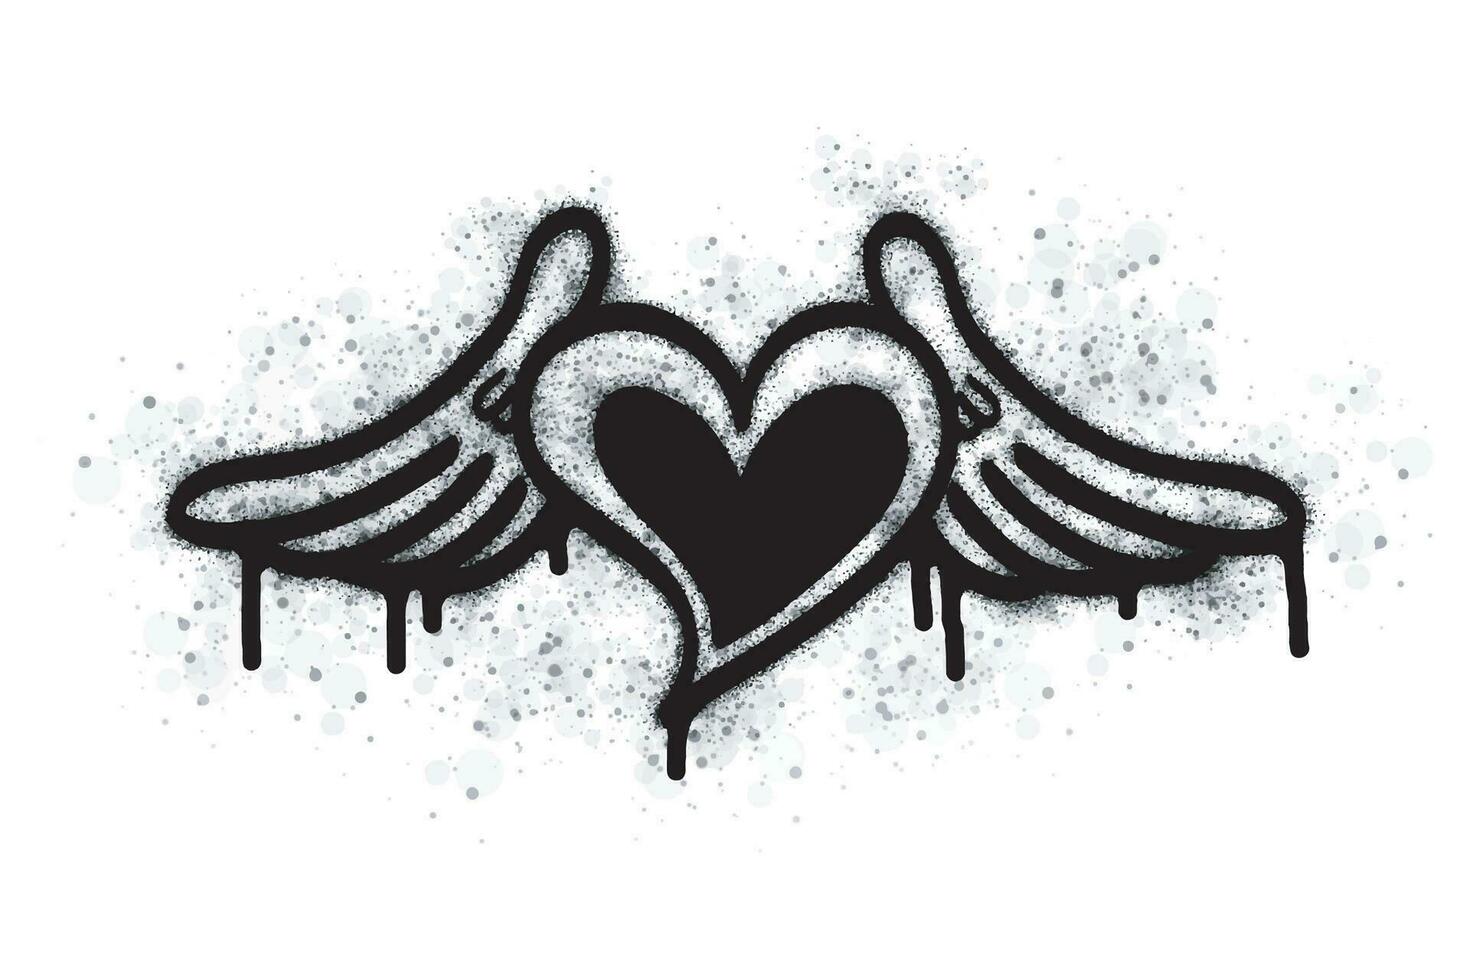 verstuiven graffiti hart teken geschilderd in zwart Aan wit. liefde hart laten vallen symbool. geïsoleerd Aan een wit achtergrond. vector illustratie